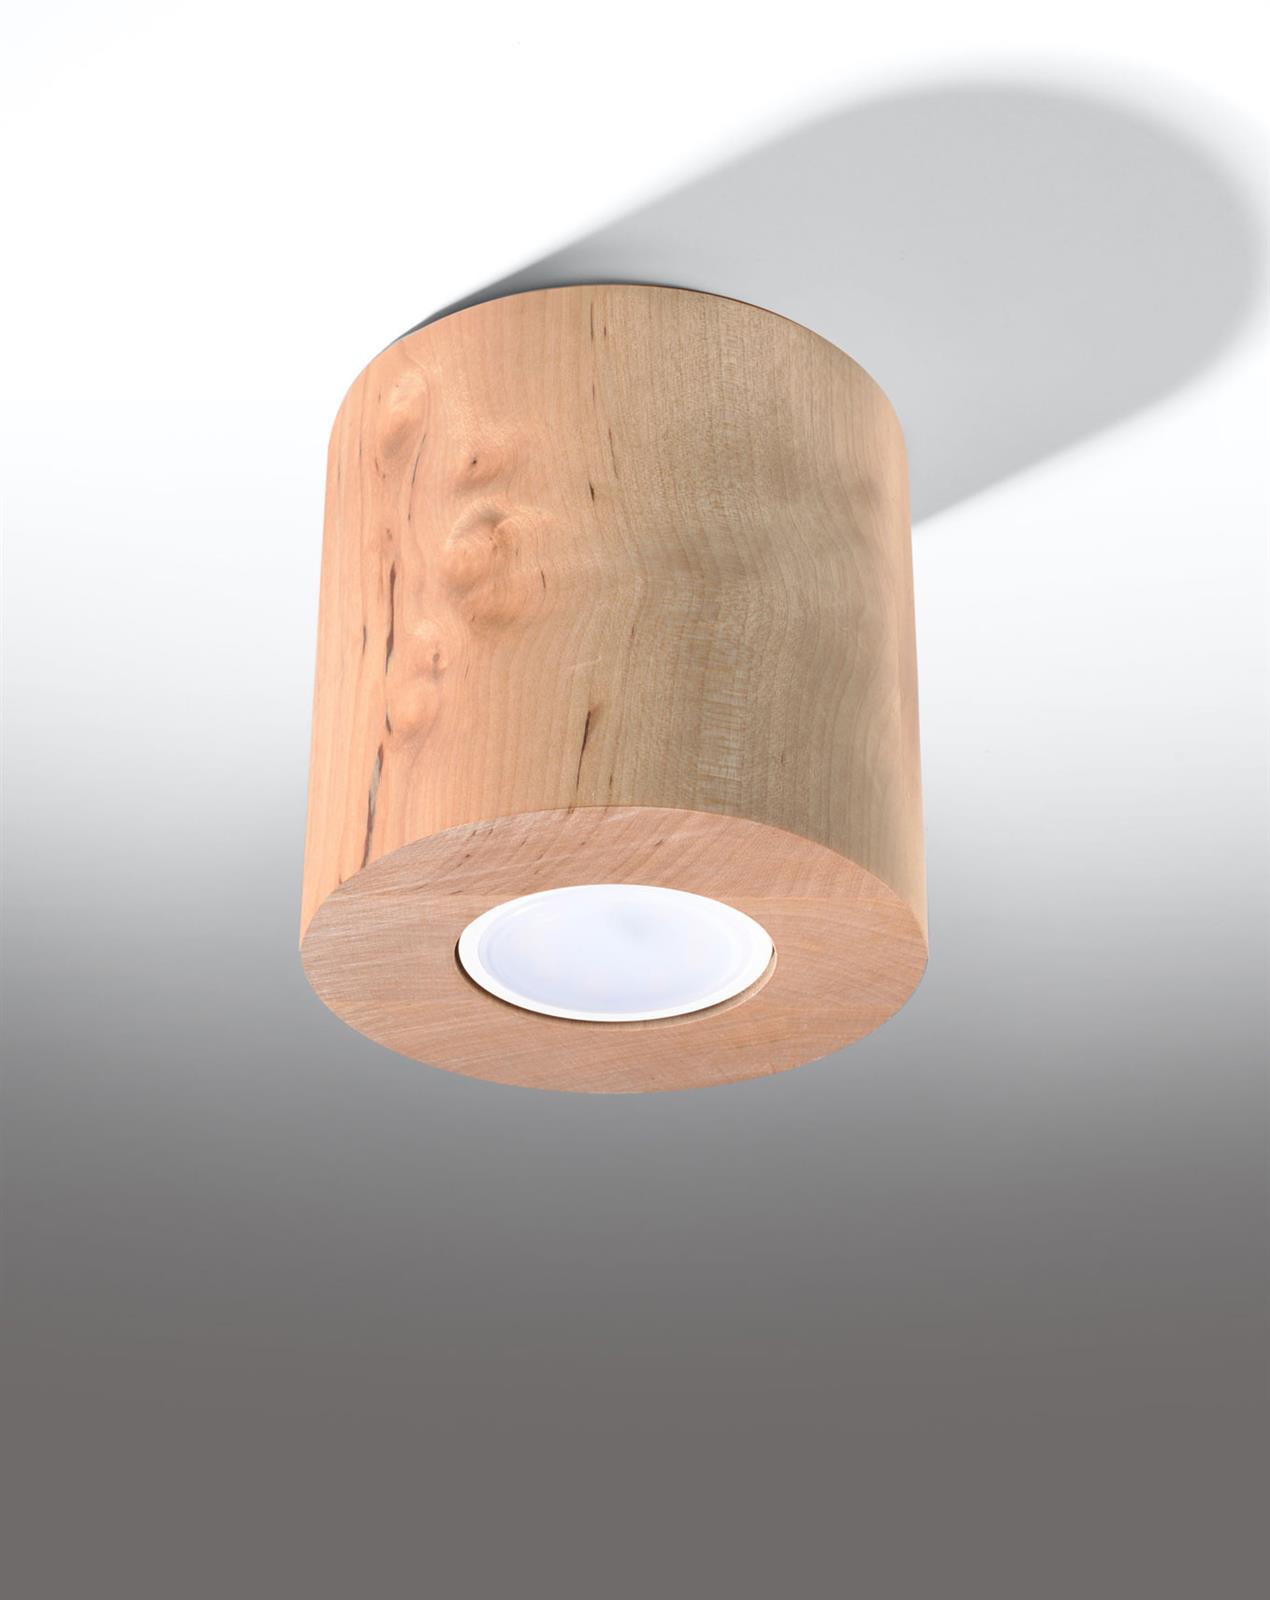 Lampa sufitowa tuba ORBIS drewno oczko spot